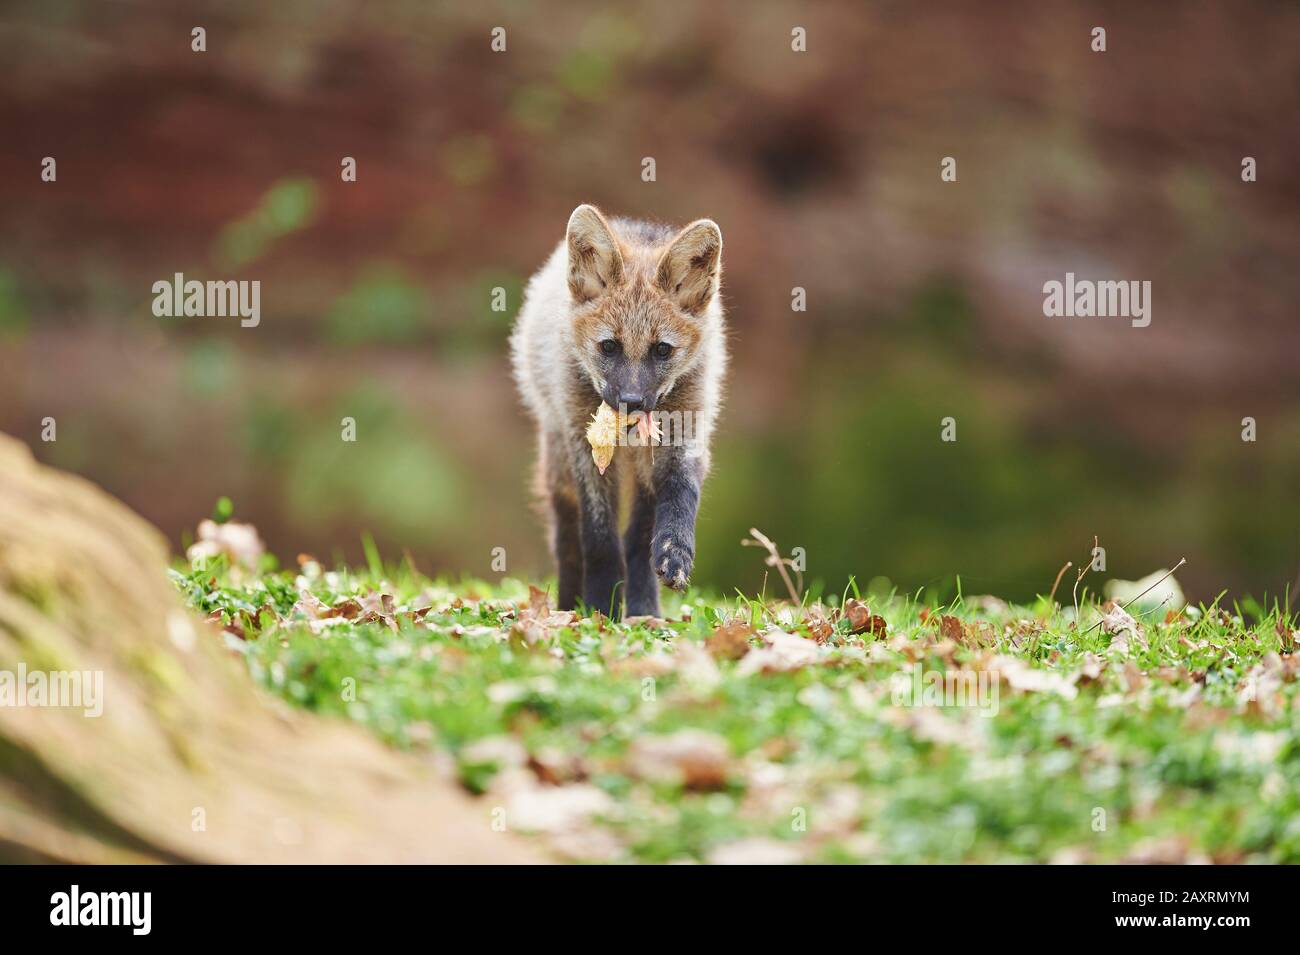 Maned wolf, Chrysocyon brachyurus, young, walking, frontal Stock Photo